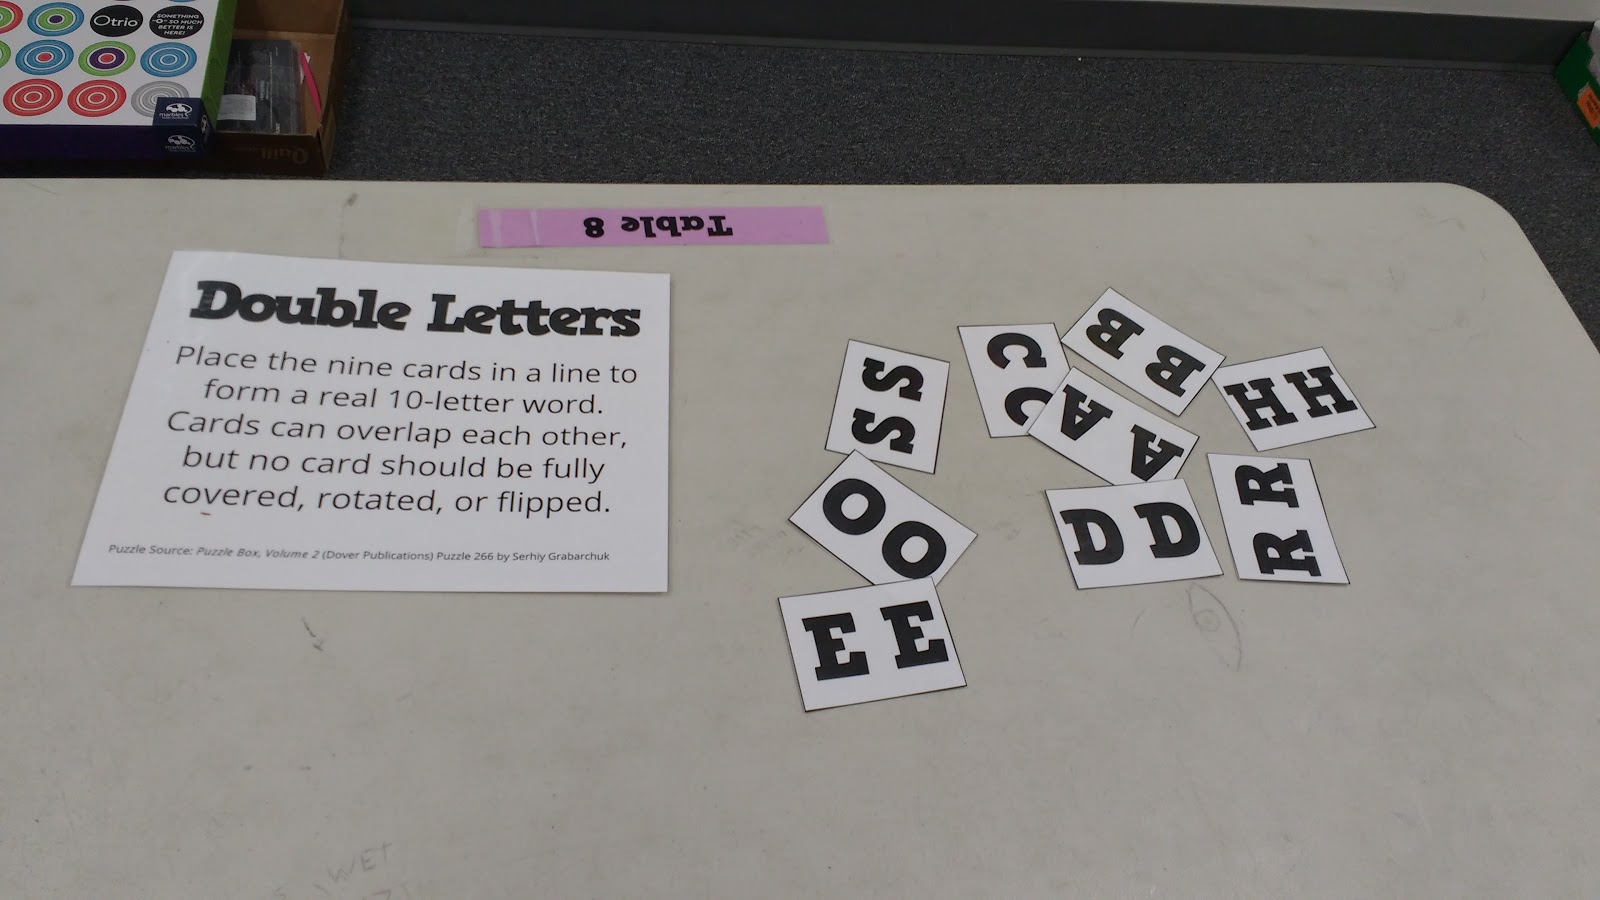 Double Letters Puzzle Doubletters